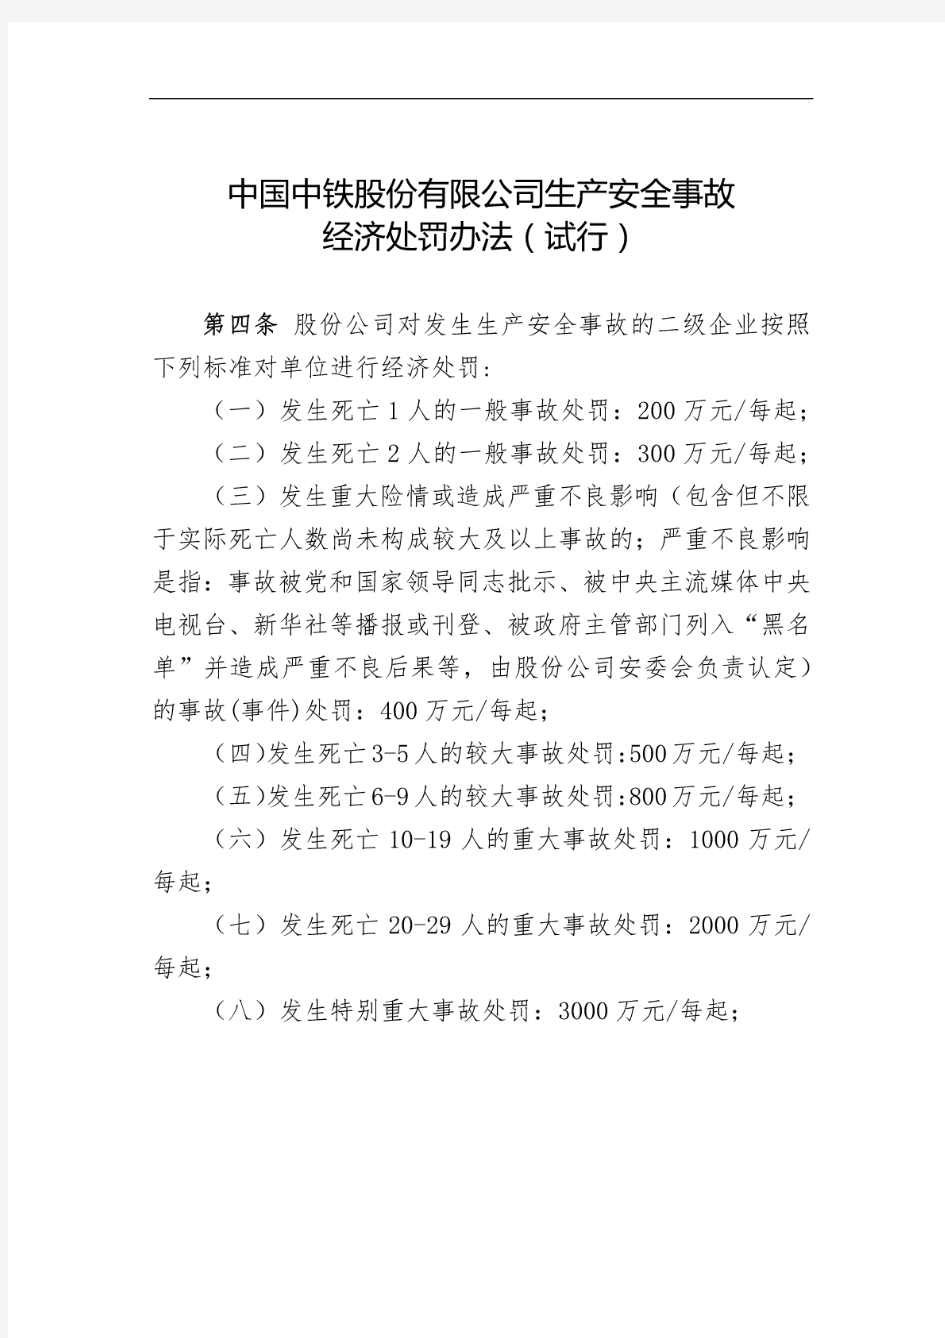 中国中铁股份有限公司生产安全事故经济处罚办法